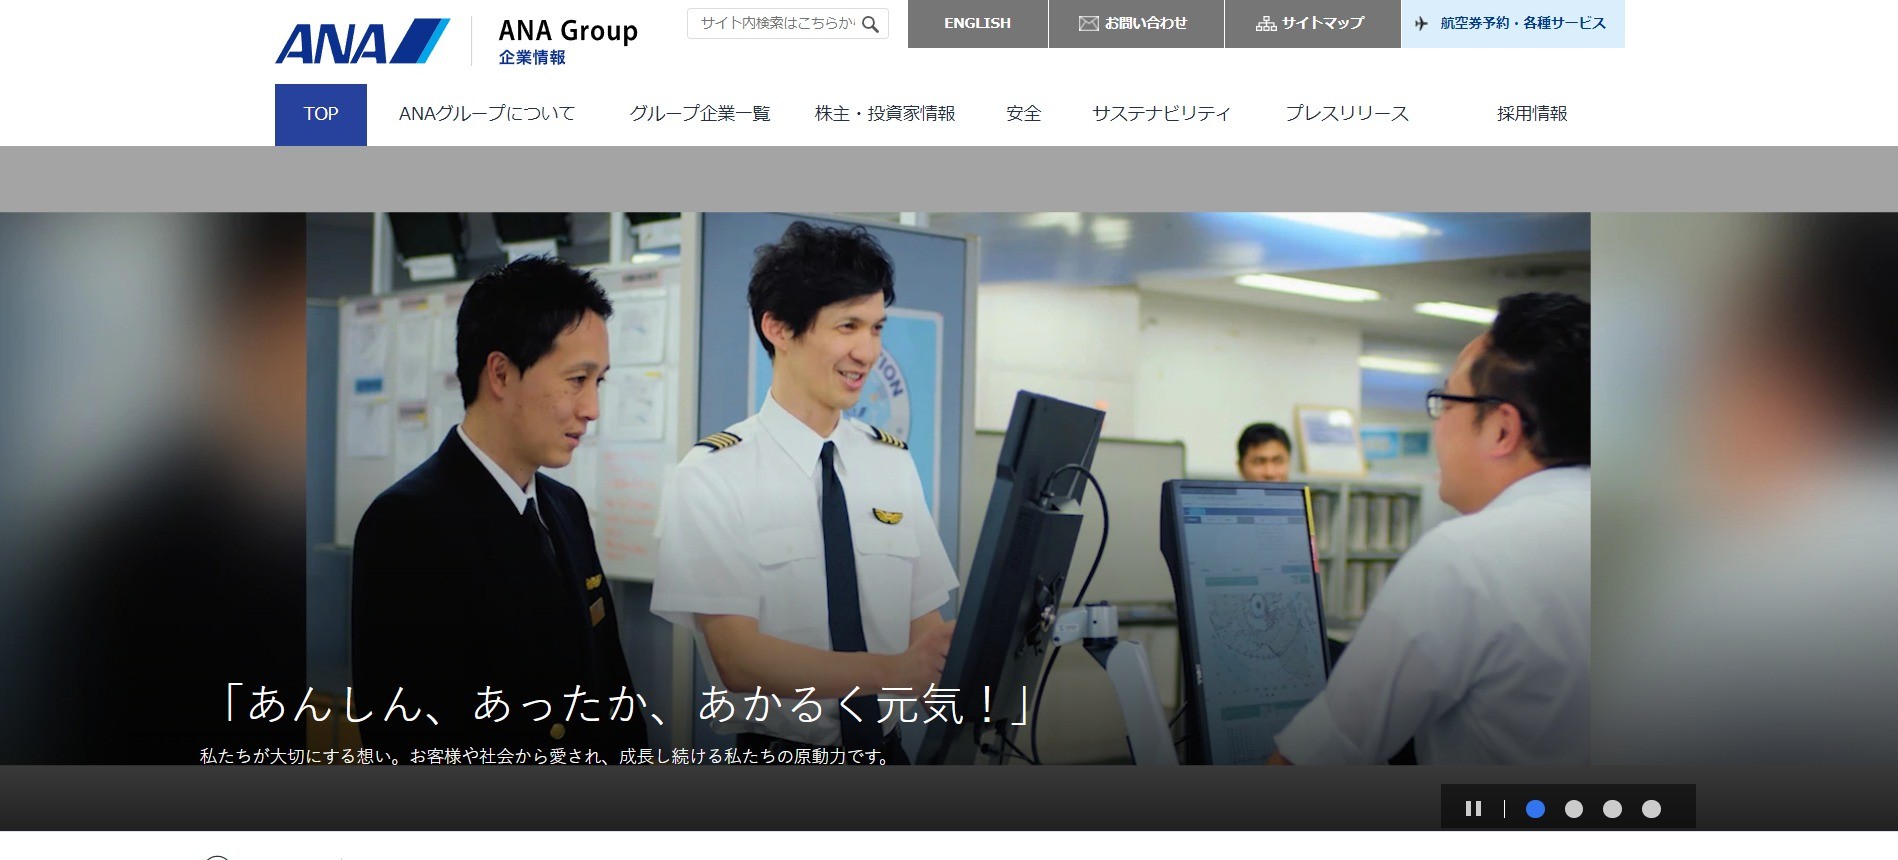 全日本空輸株式会社のクラウドシステム開発